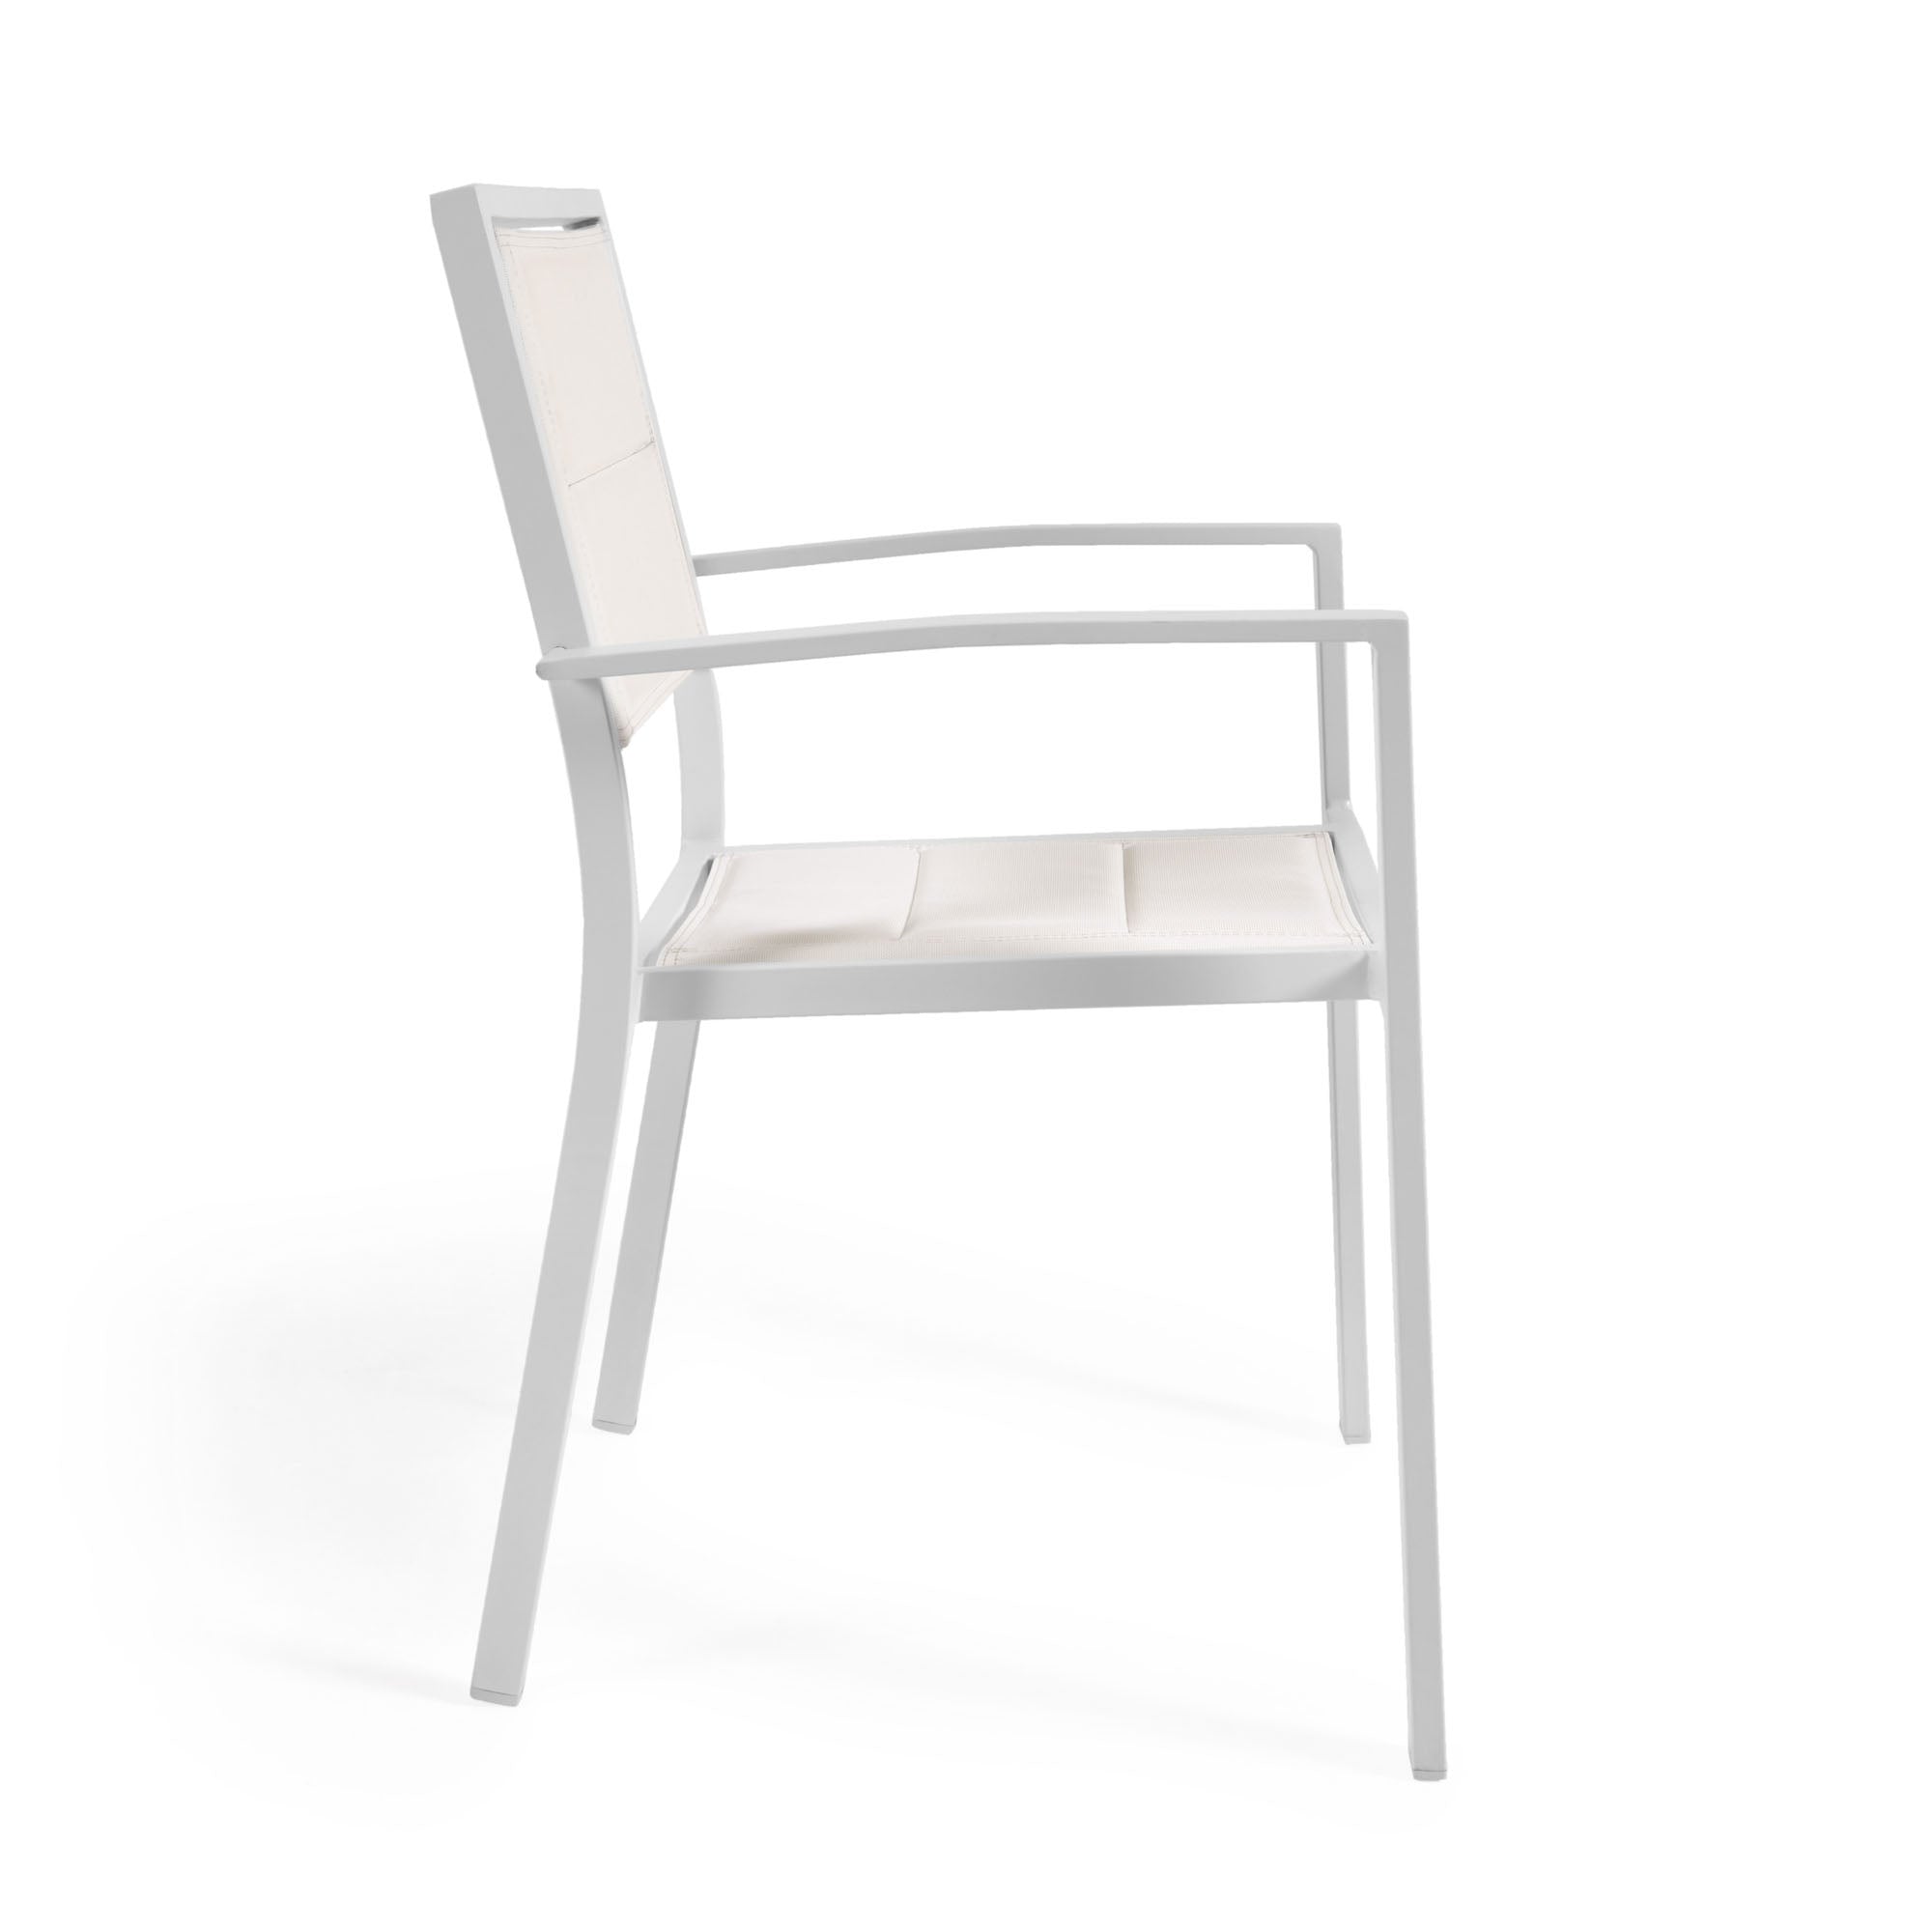 Sirley egymásba rakható kültéri szék fehér alumíniumból és textilénből